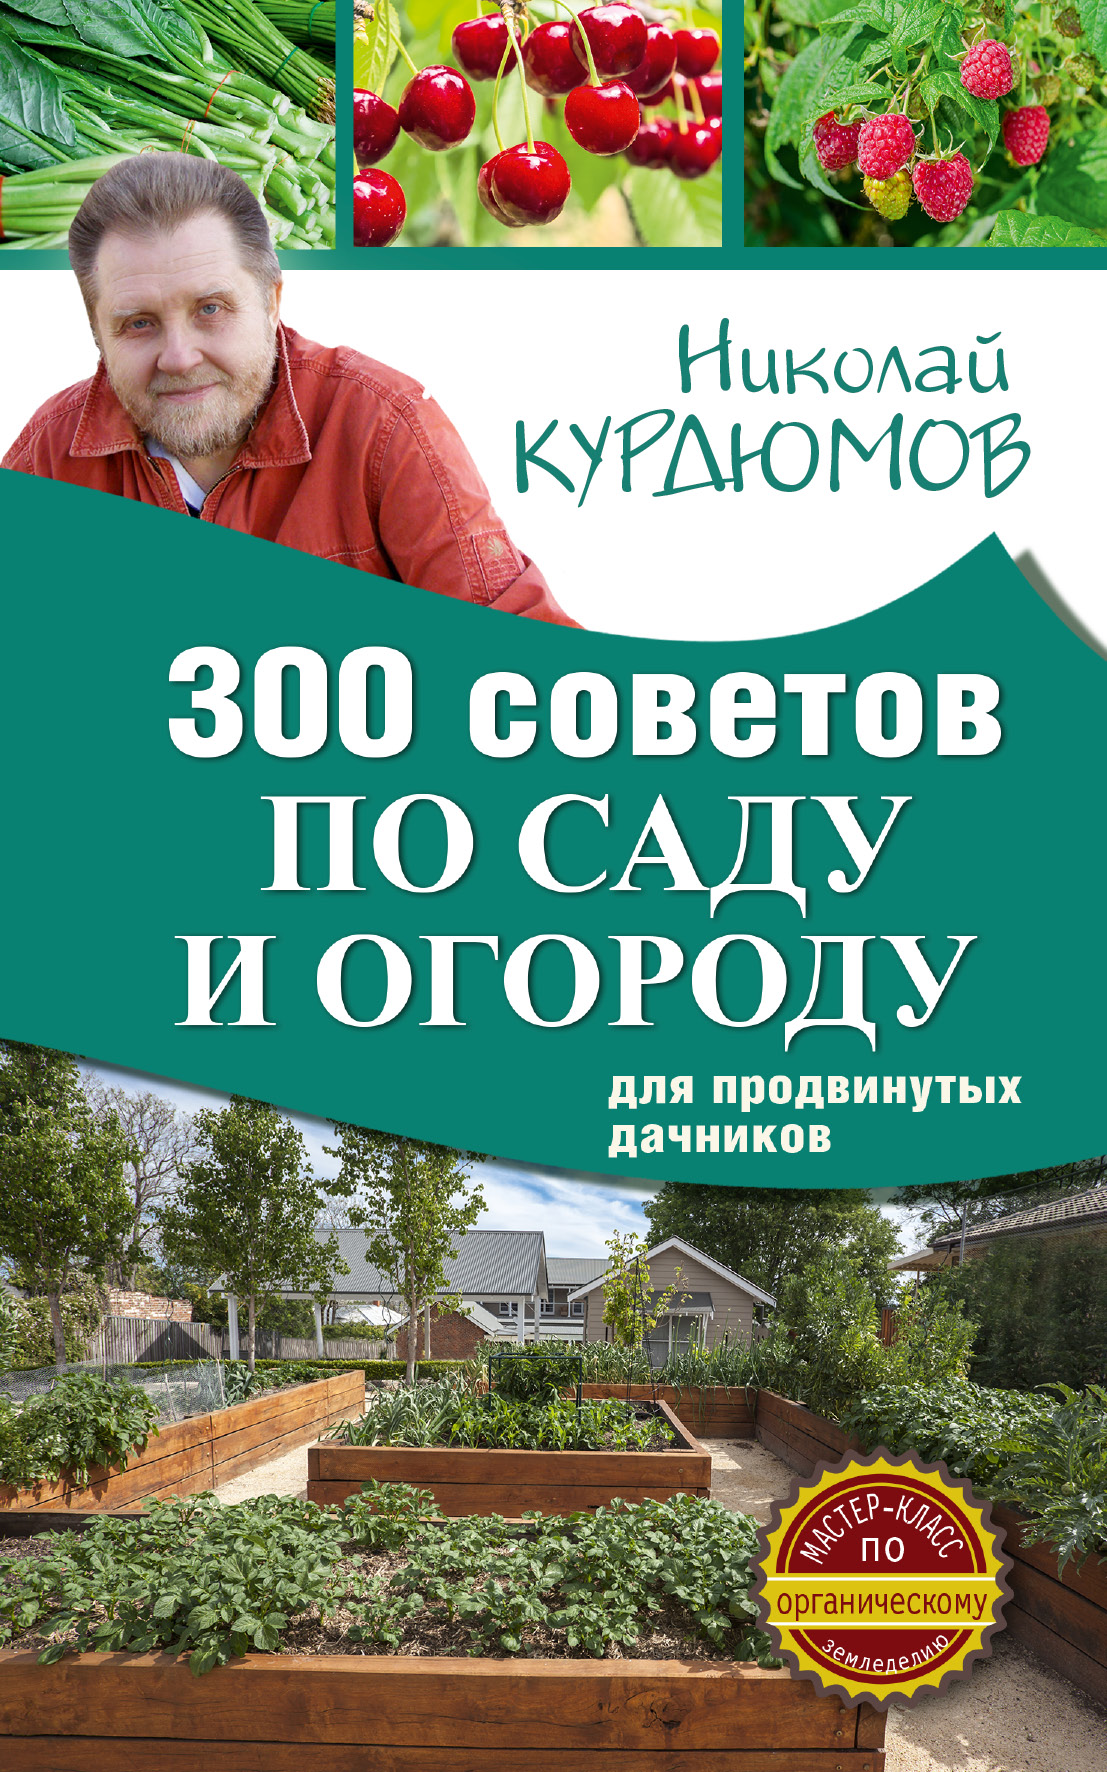 Курдюмов Николай Иванович 300 советов по саду и огороду для продвинутых дачников - страница 0